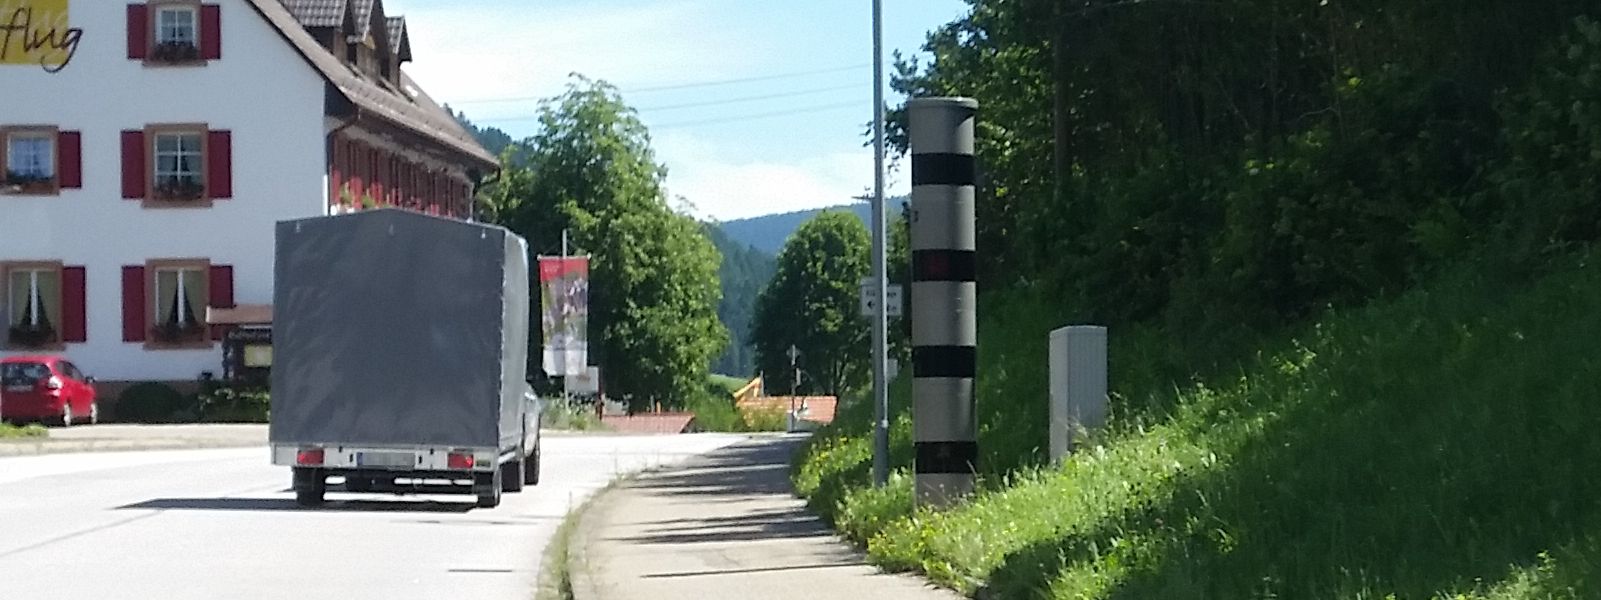 Landratsamt Rastatt: Geschwindigkeitsmessungen unverwertbar?